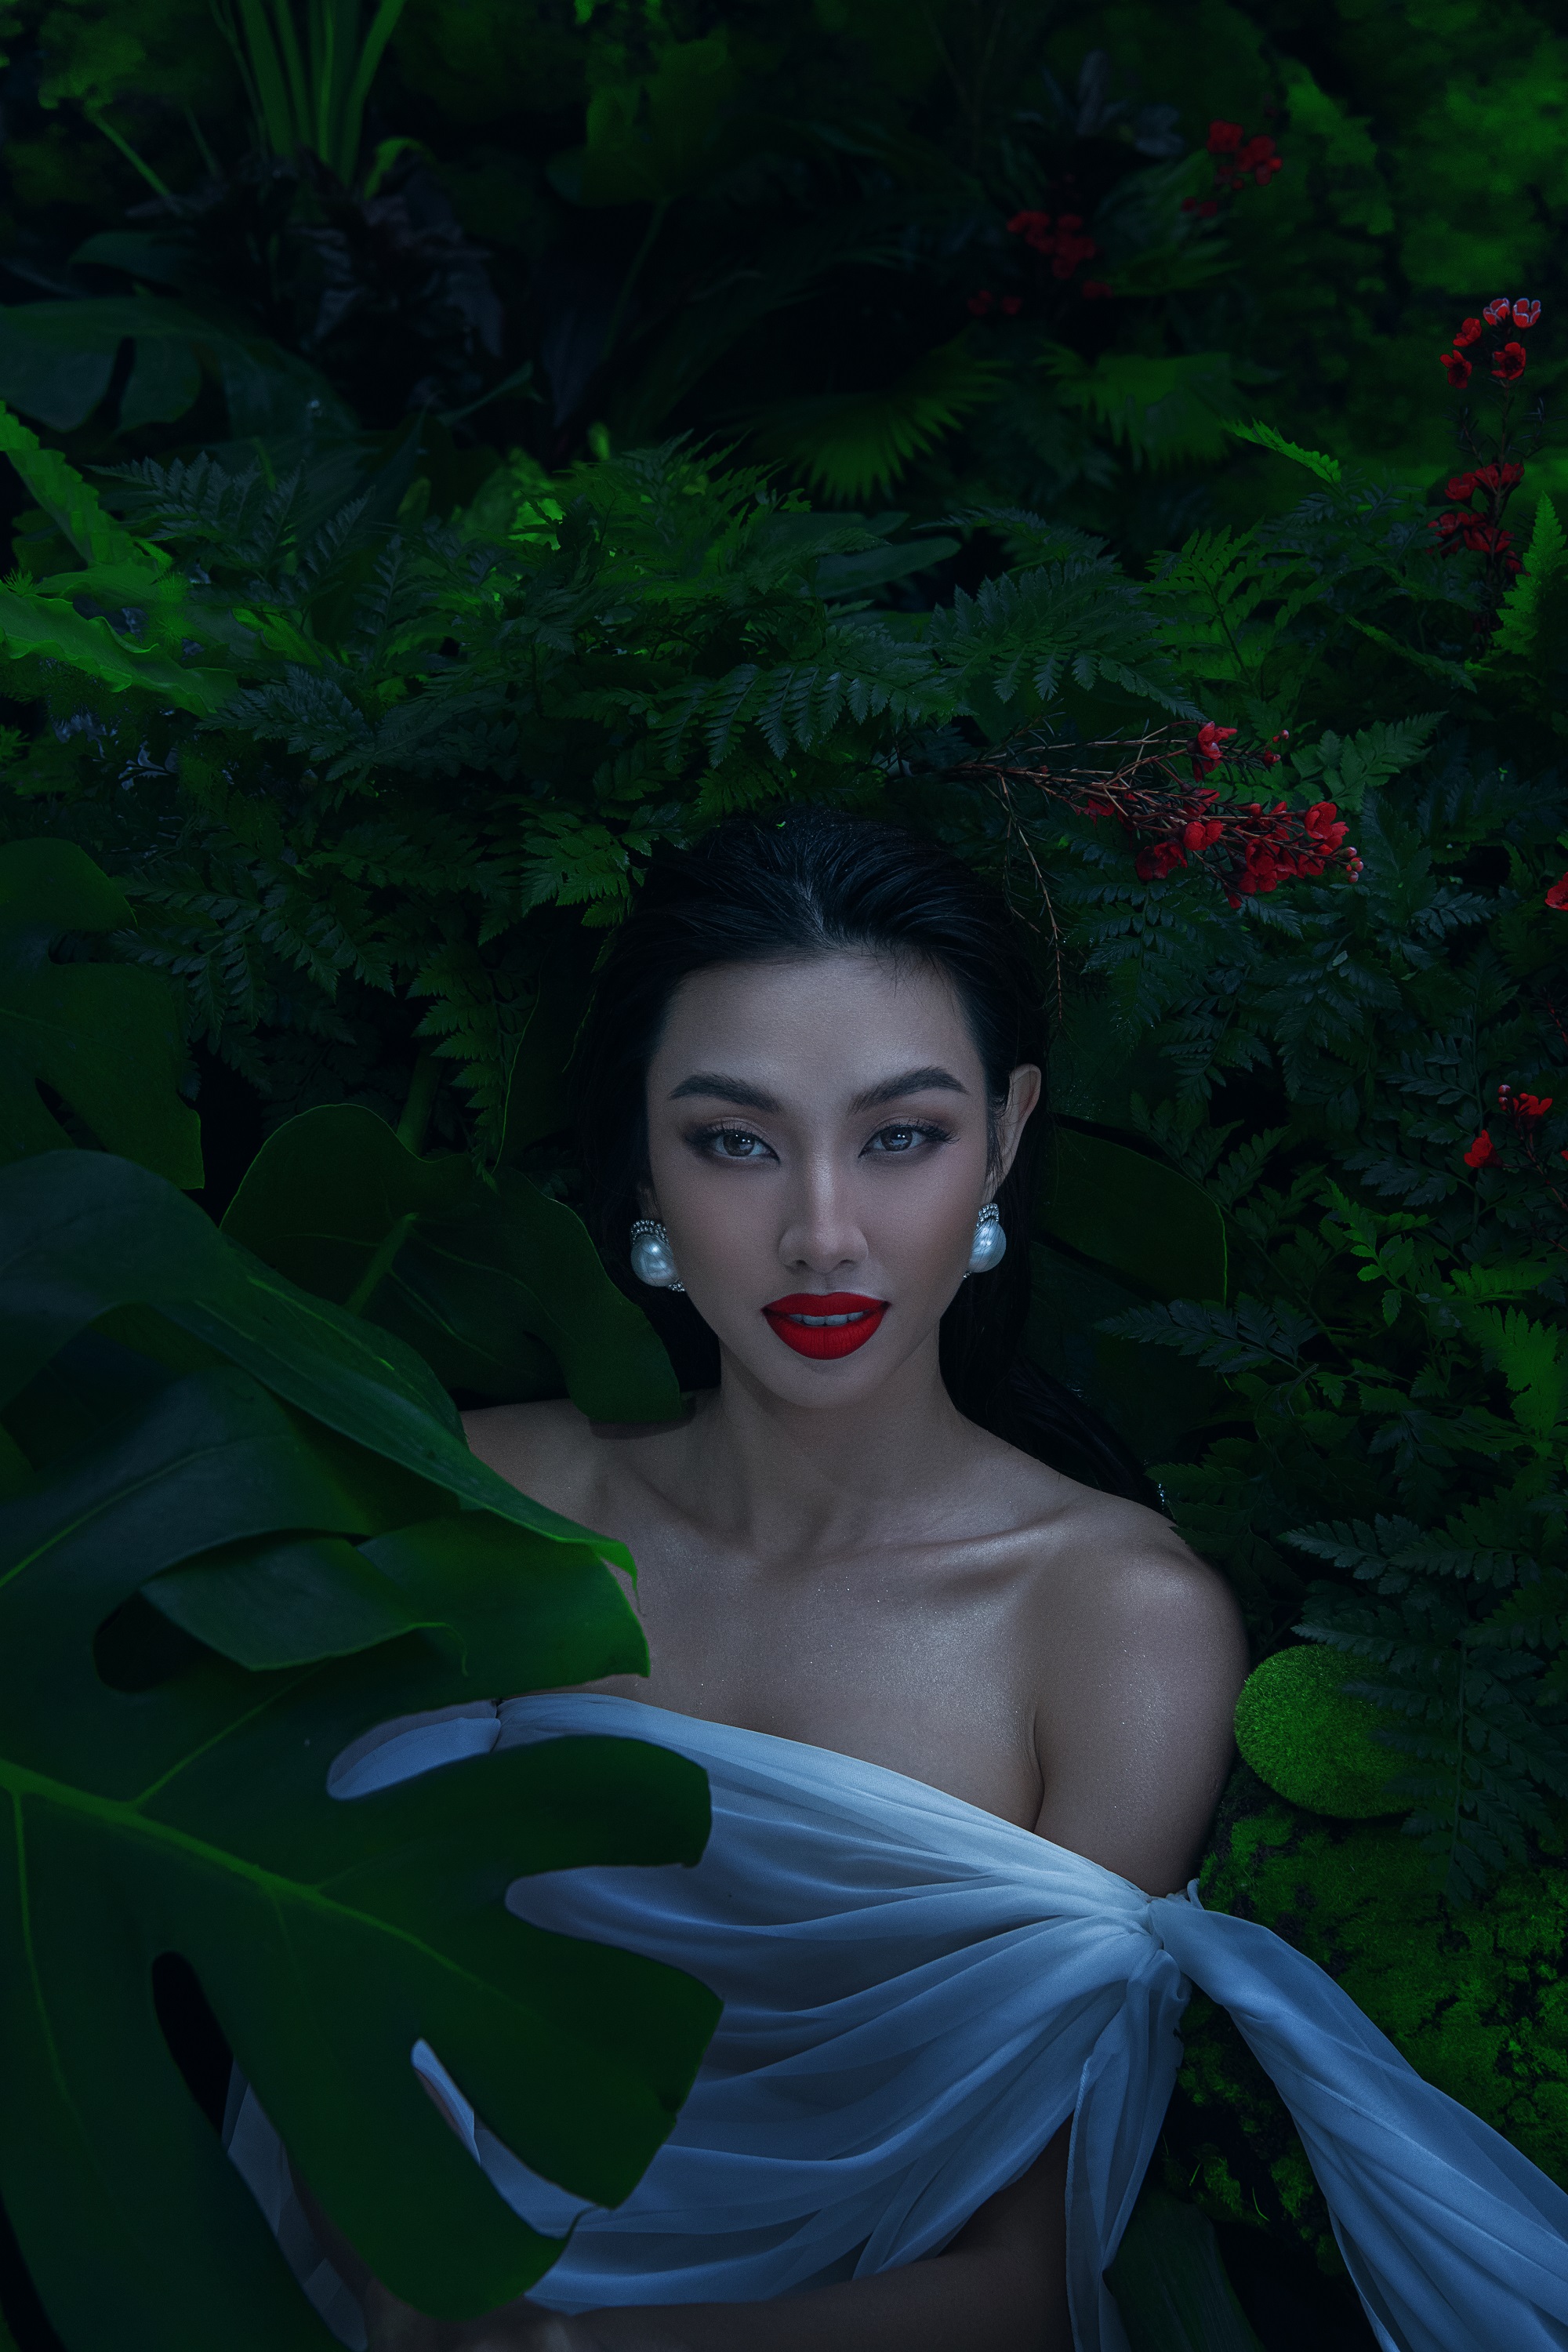 Hoa hậu Thùy Tiên “trình làng” bộ ảnh đắm mình trong hồ nước, không quên hé lộ lịch trình sắp tới - ảnh 1